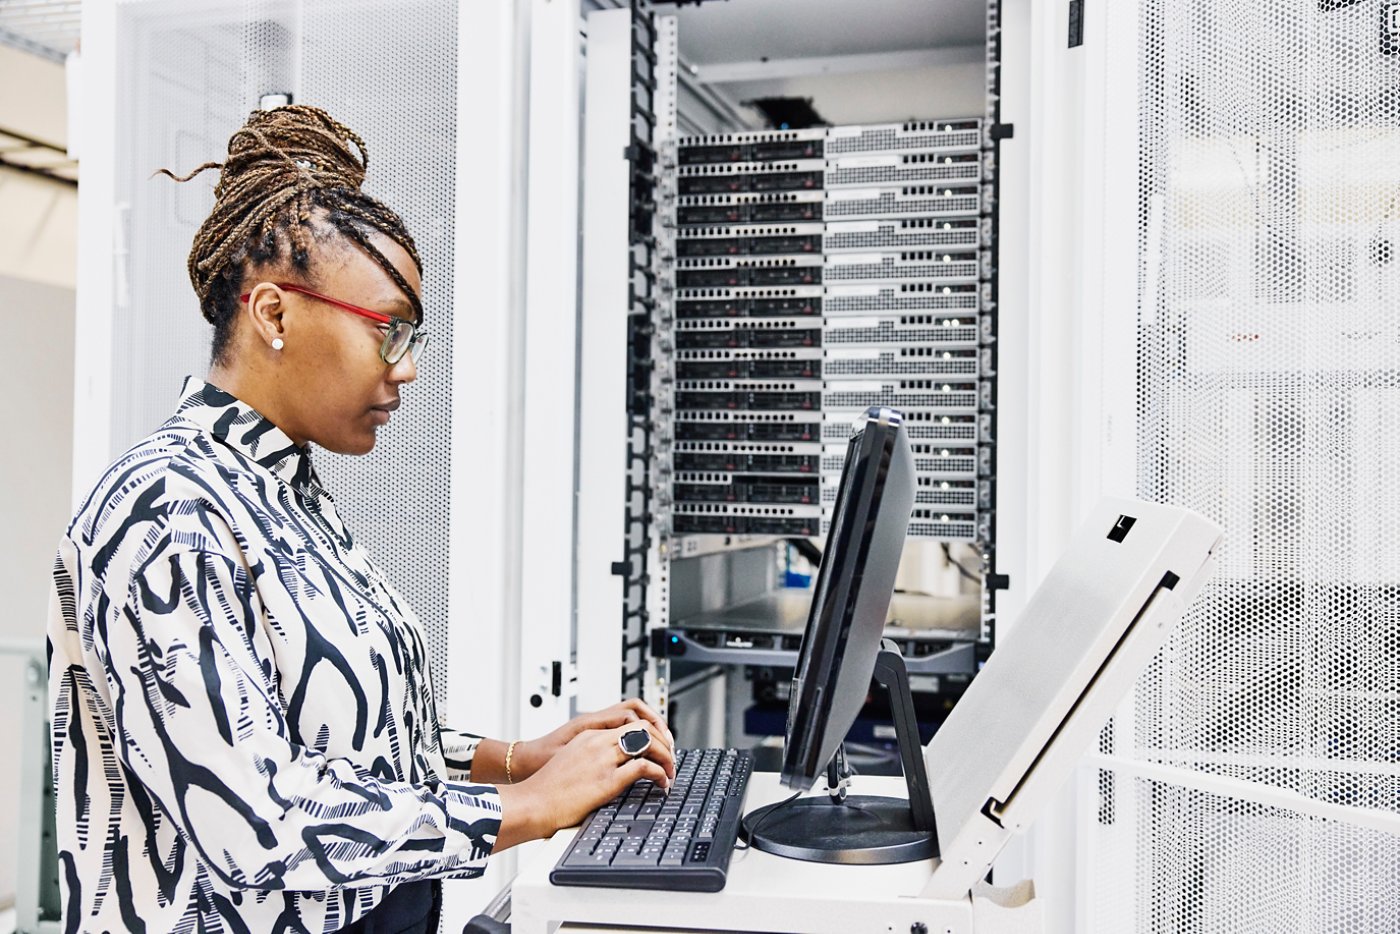 Medium shot of female IT professional configuring server in data center